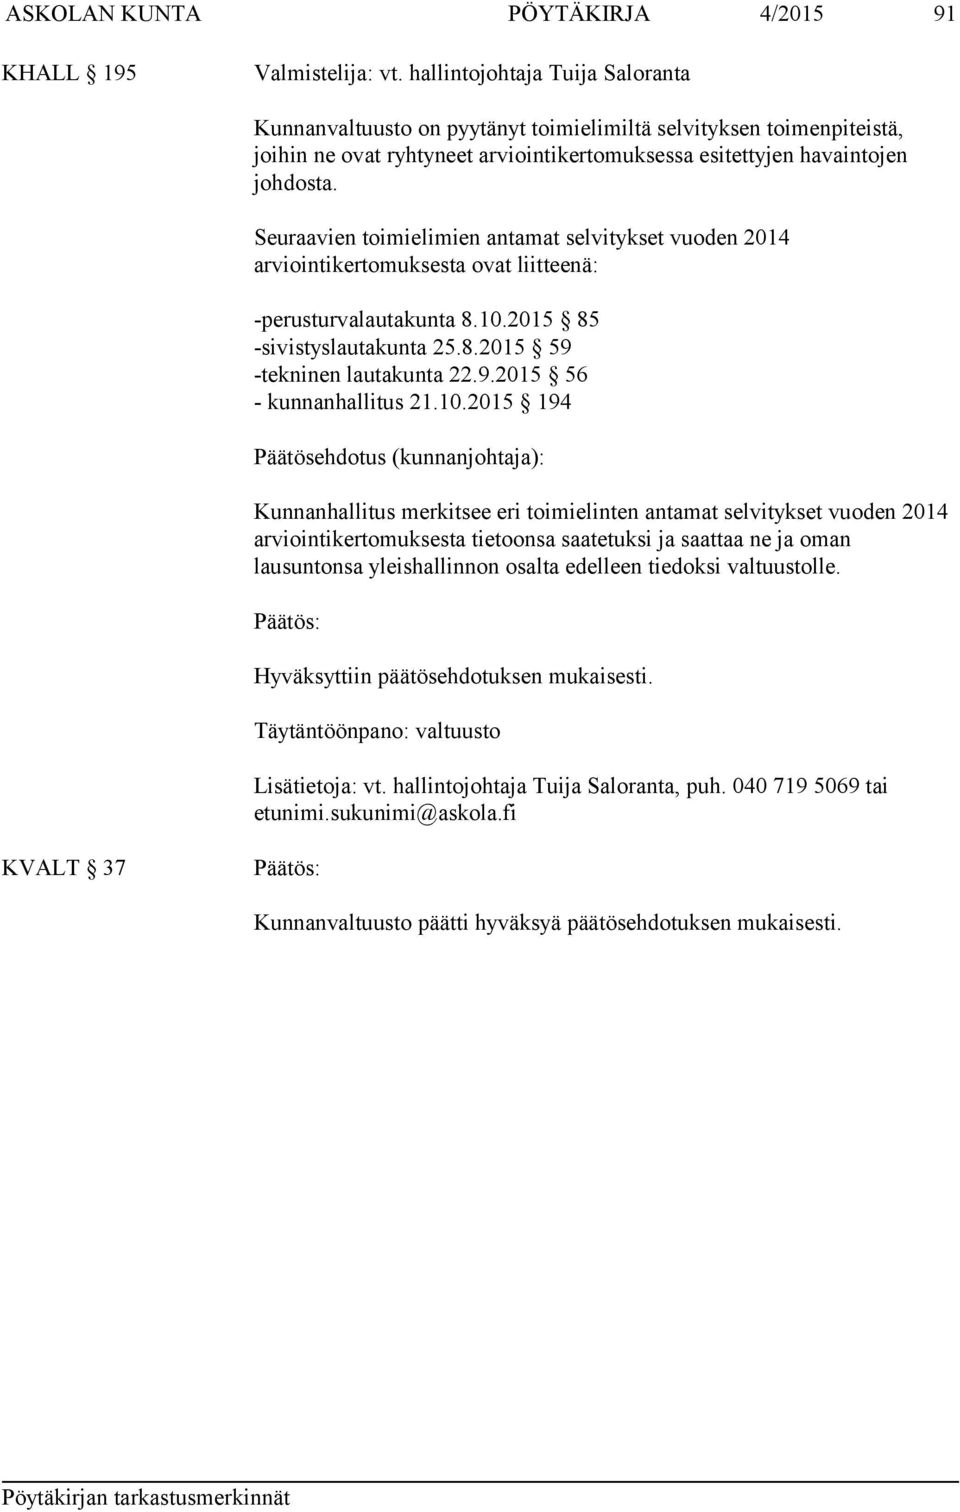 Seuraavien toimielimien antamat selvitykset vuoden 2014 arviointikertomuksesta ovat liitteenä: -perusturvalautakunta 8.10.2015 85 -sivistyslautakunta 25.8.2015 59 -tekninen lautakunta 22.9.2015 56 - kunnanhallitus 21.